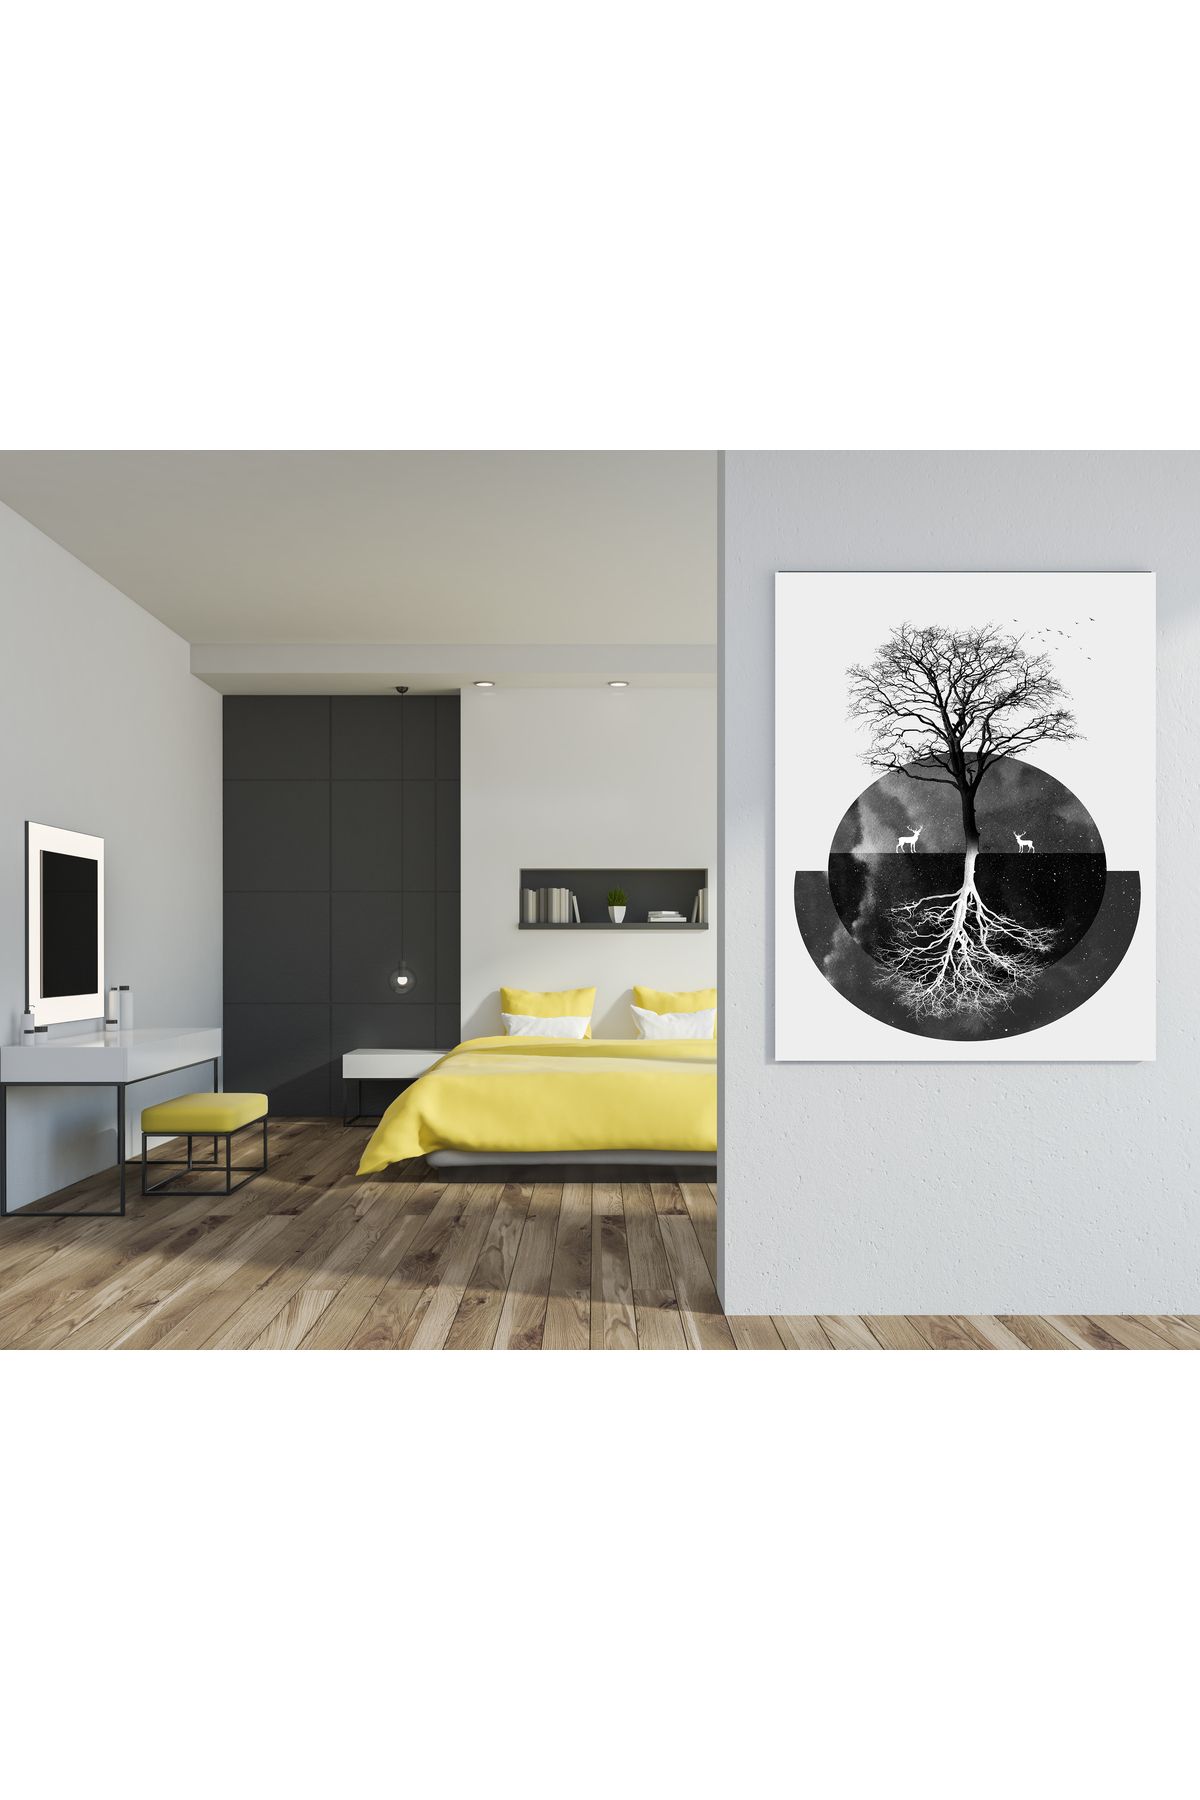 arzuönler Siyah Beyaz Yansımalı Ağaç Özel Tasarım HD Kalite Dekoratif Kanvas Tablosu